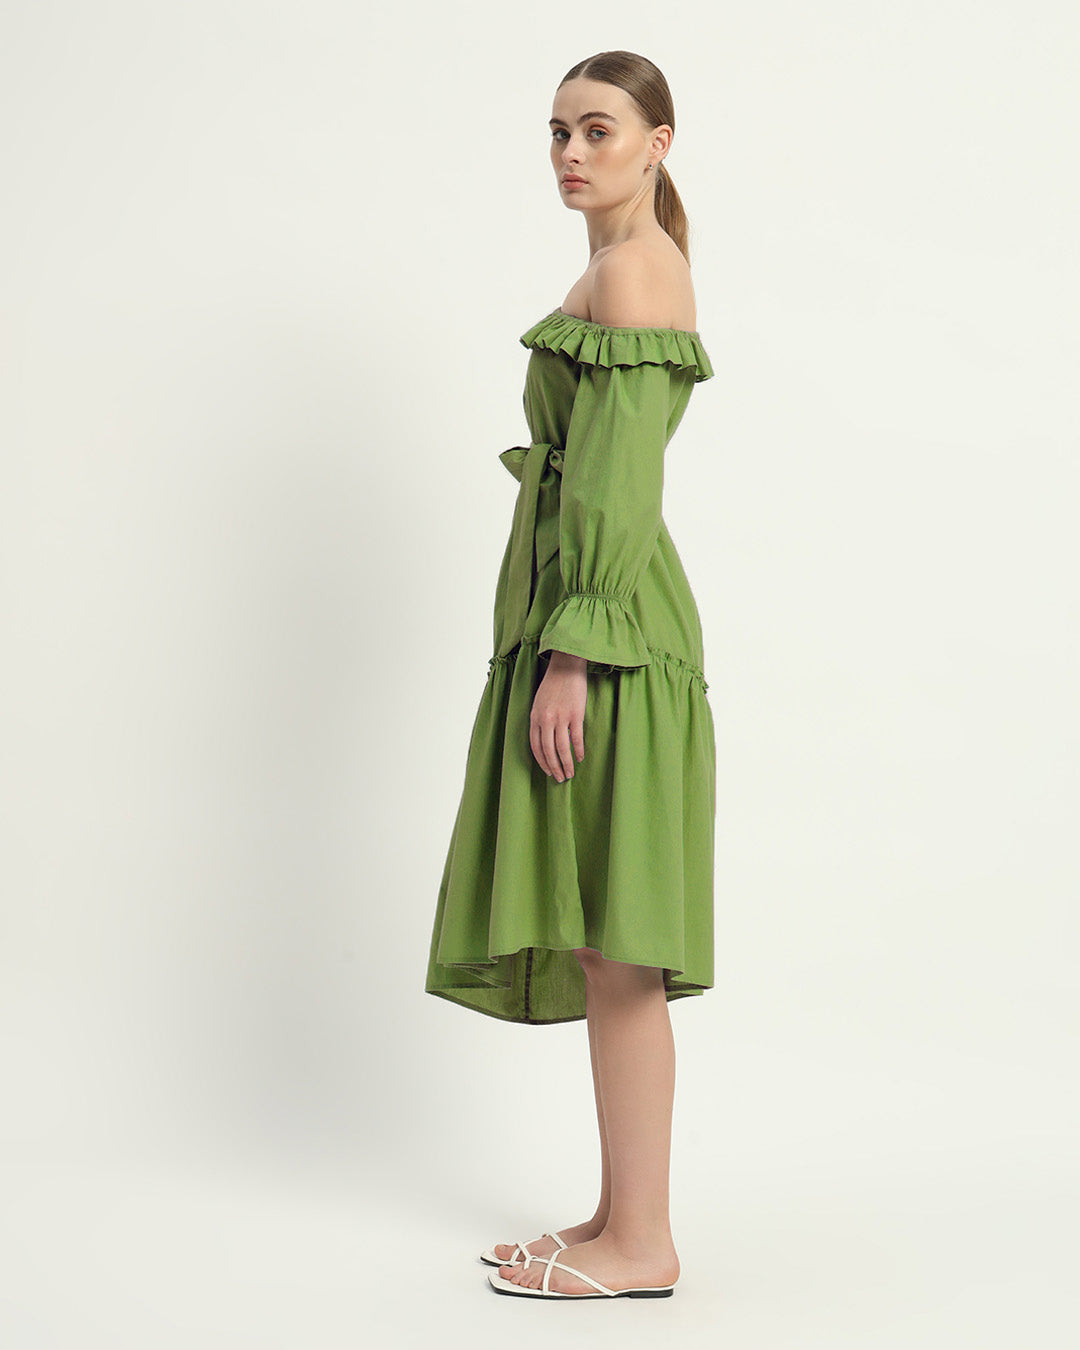 The Stellata Fern Cotton Dress